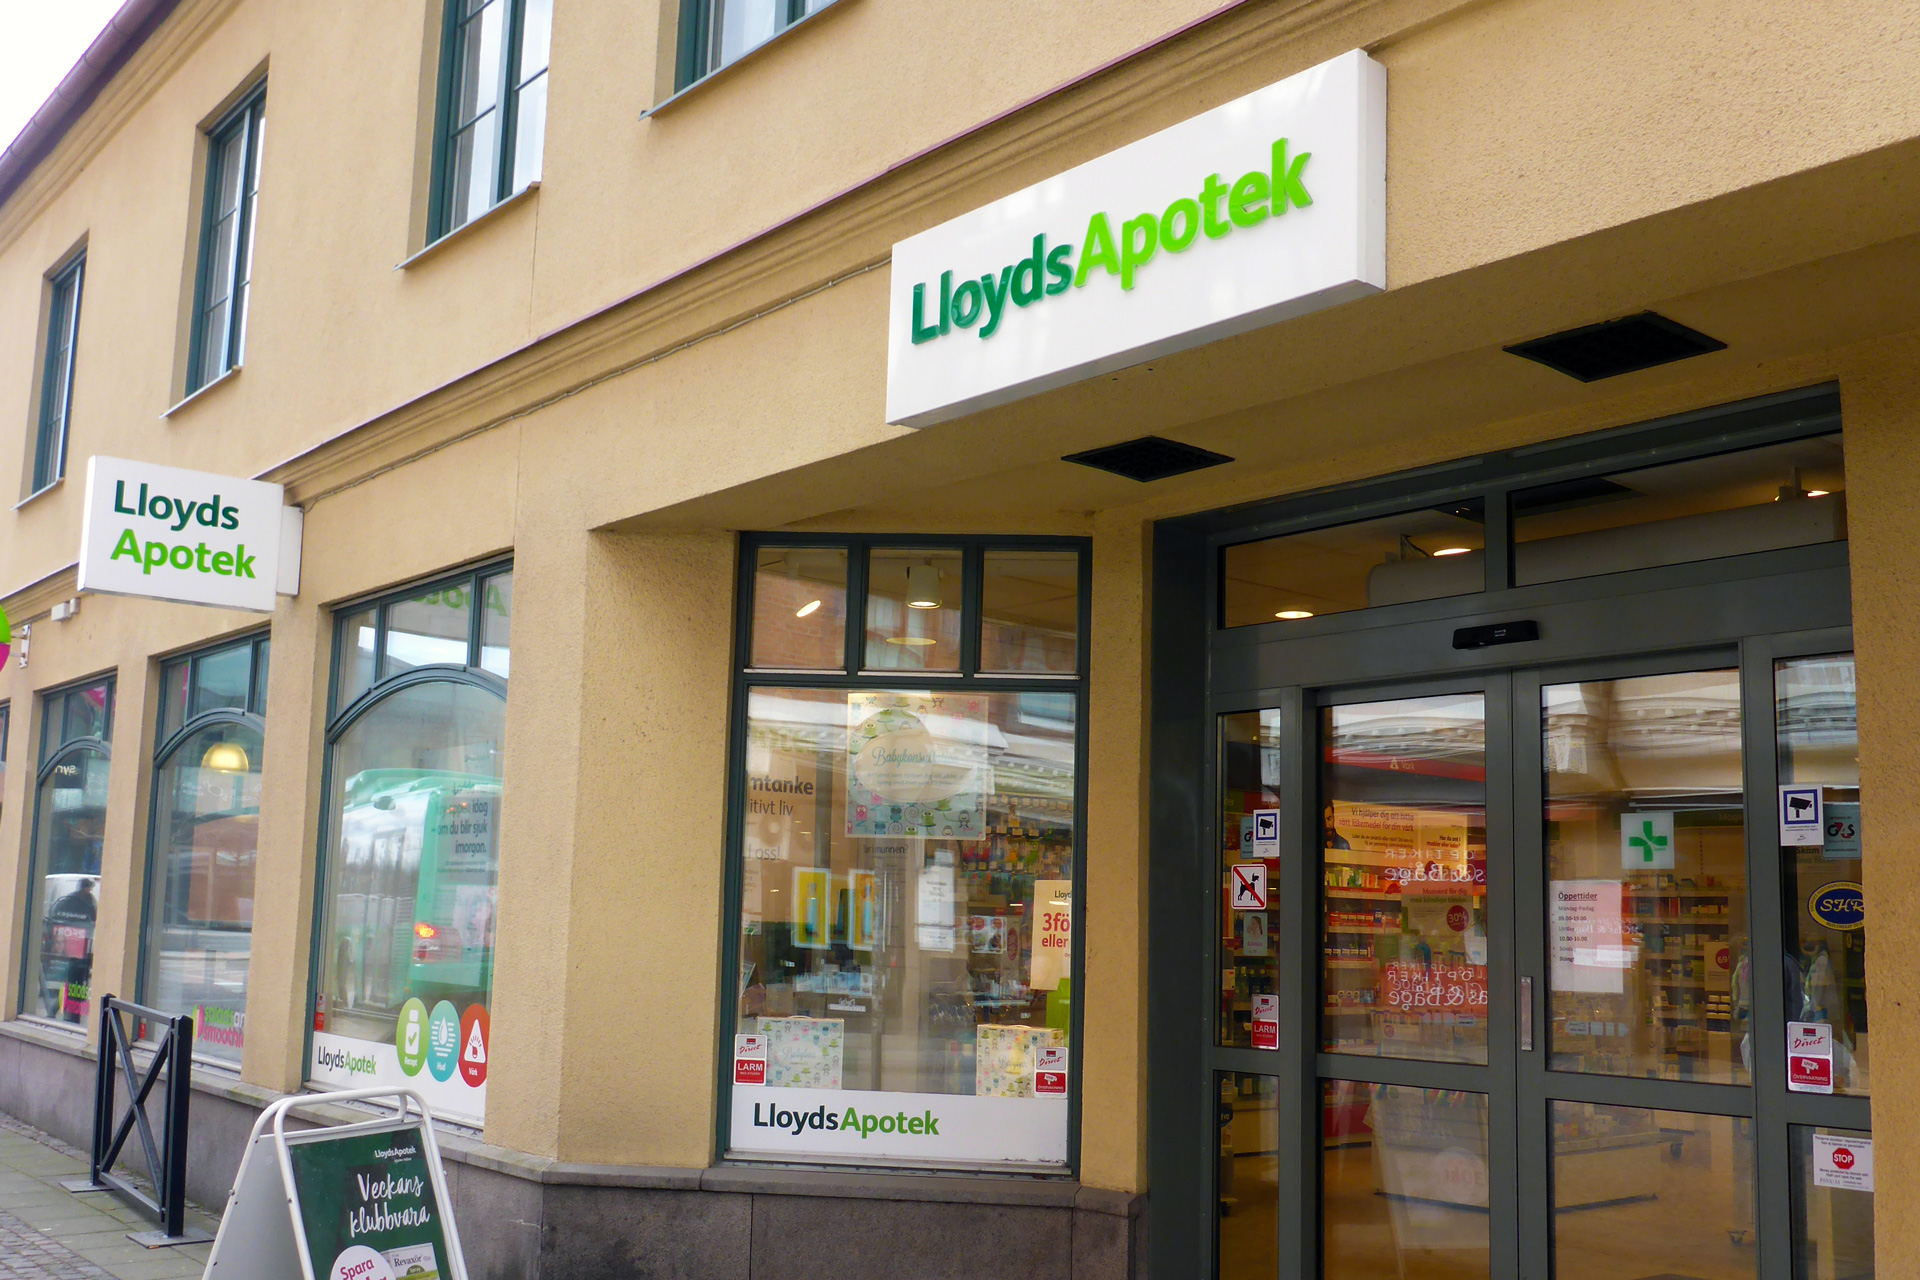 Lloyds apotek köpt av europeisk apoteksjätte